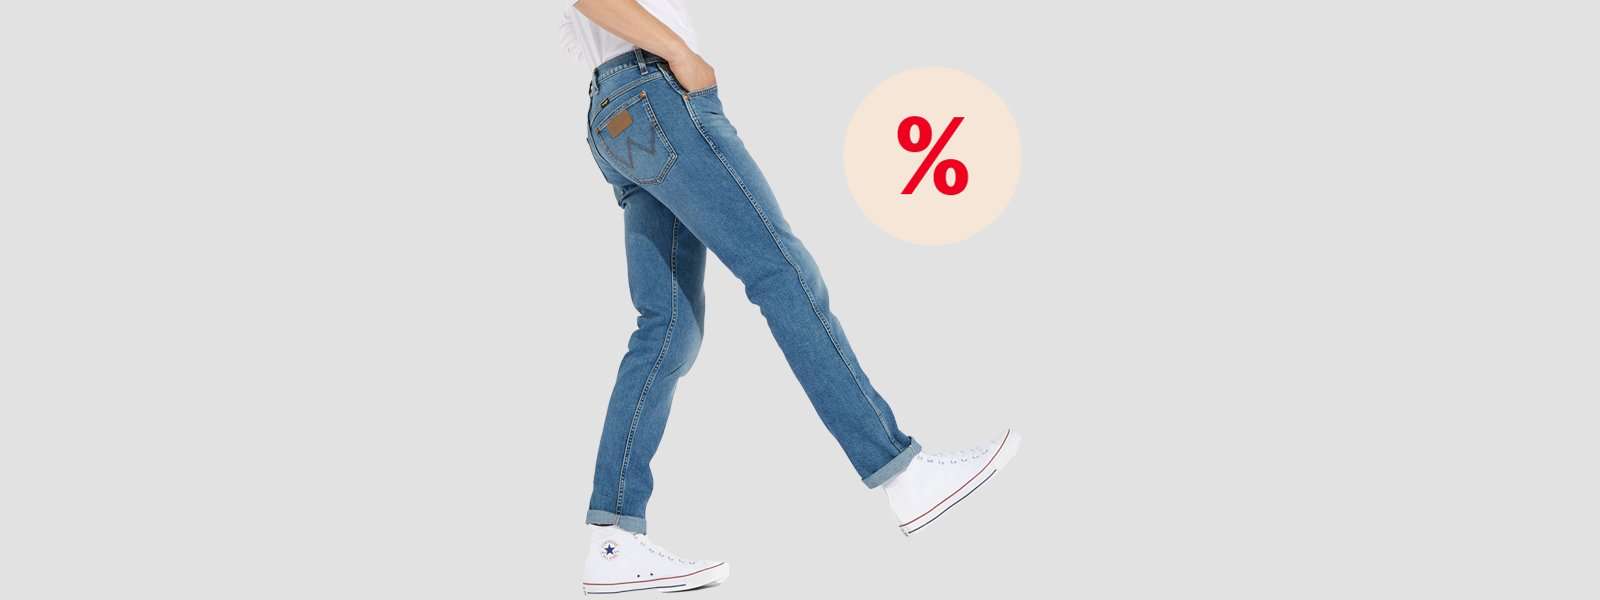 Herren-Jeans-Mind. 30% reduziert